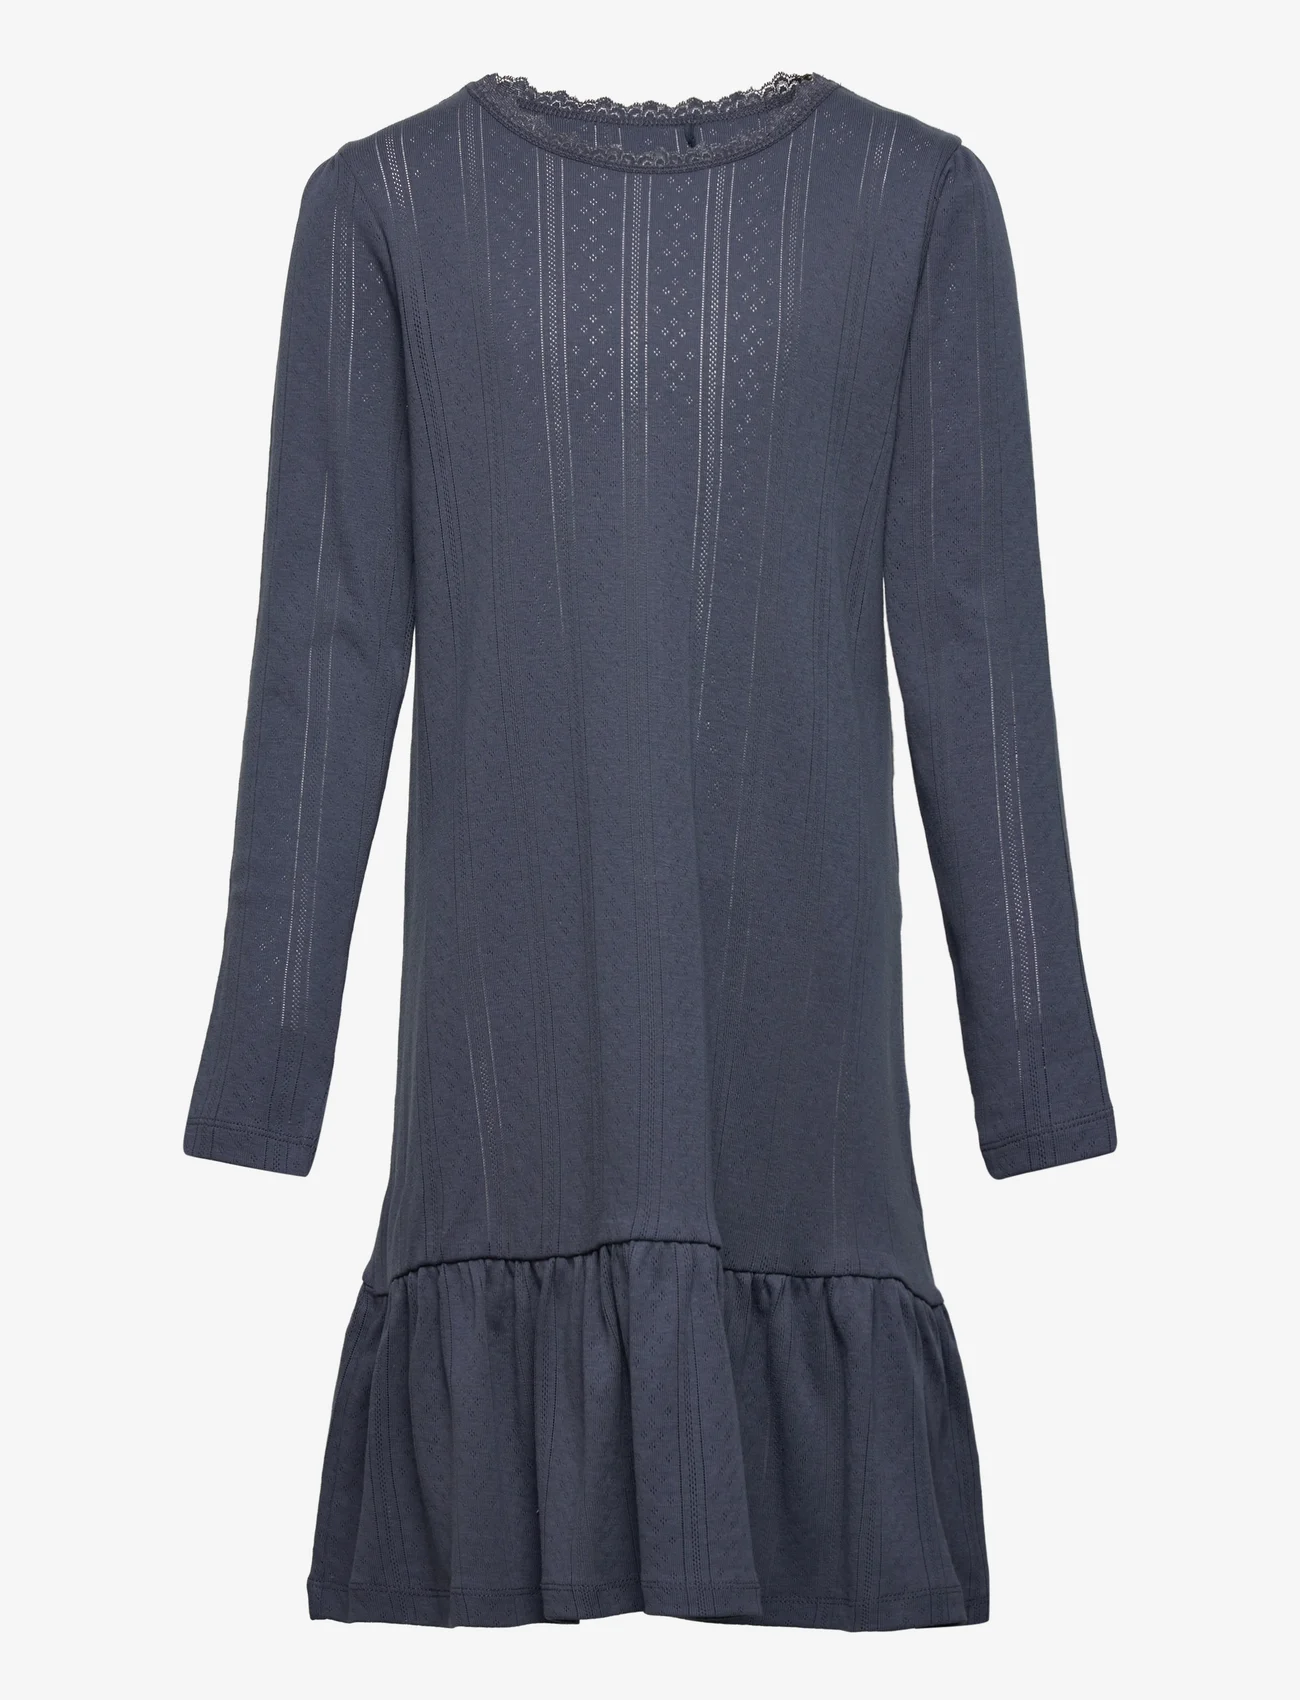 Noa Noa miniature - Dress long sleeve - long-sleeved casual dresses - mood indigo - 0